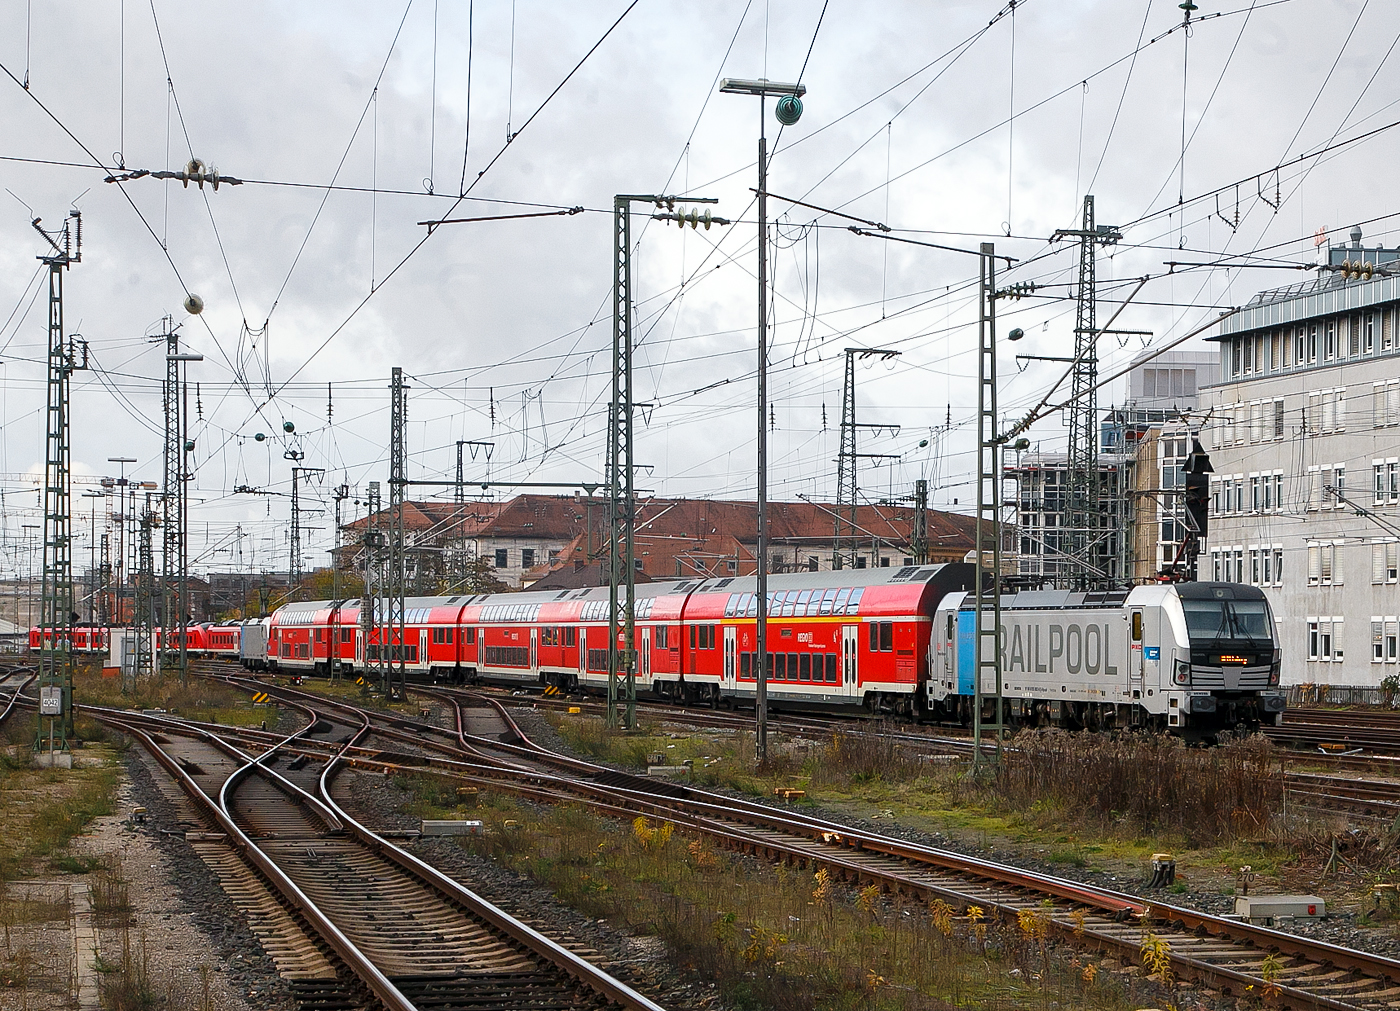 Im Sandwich zweier von Railpool angemieteten Siemens Vectron AC verlsst der RE 19 „Franken-Thringen-Express“  Nrnberg –Erlangen  – Bamberg – Coburg, der DB Regio Nordostbayern, den Hauptbahnhof Nrnberg. 

Vorne die 193 805-9 (91 80 6193 805-9 D-Rpool) und hinten die 193 802-6 (91 80 6193 802-6 D-Rpool).

Die Siemens Vectron AC wurden Siemens Mobilitiy in Mnchen-Allach gebaut, haben eine Leistung von 6.400 kW (6.4 MW), sind in Deutschland und sterreich fr 200 km/h zugelassen und haben ein Nahverkehrspaket (mit Zugzielanzeige an den Fronten). Die 193 802 wurde 2012 unter der Fabriknummer 21773 gebaut und die 193 805 wurde 2013 unter der Fabriknummer 21776 gebaut.
